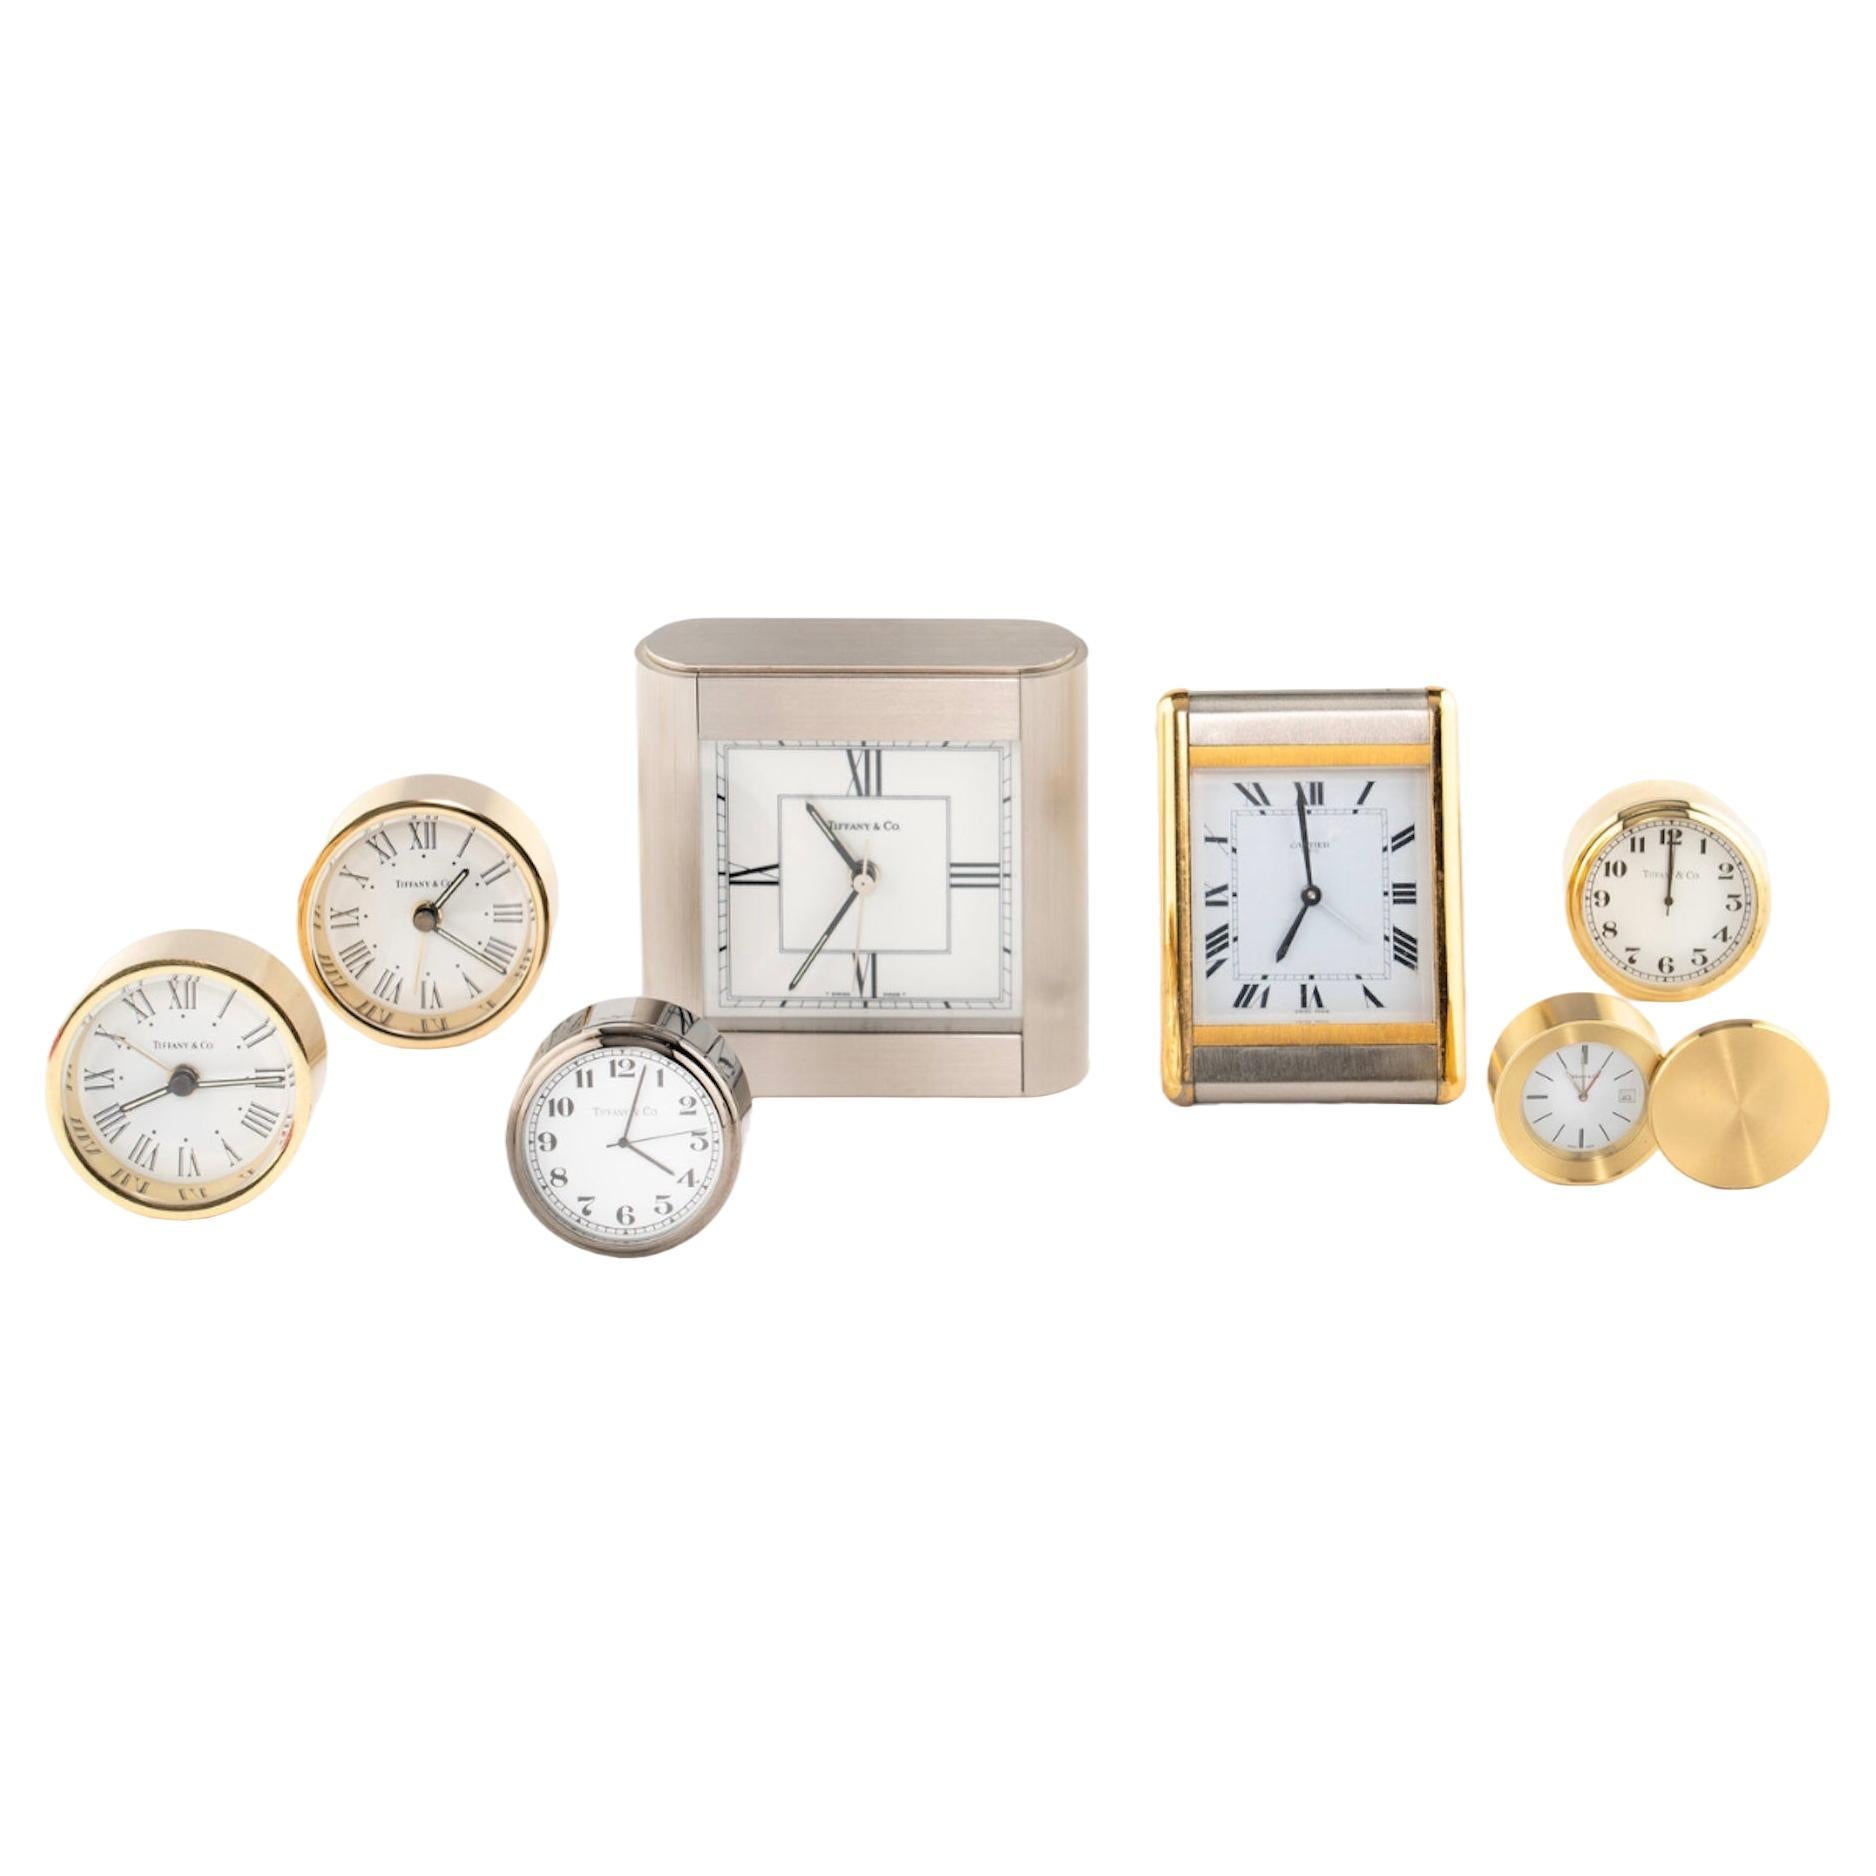 Un groupe d'horloges de bureau Tiffany et Cartier du 20ème siècle Prix par horloge.